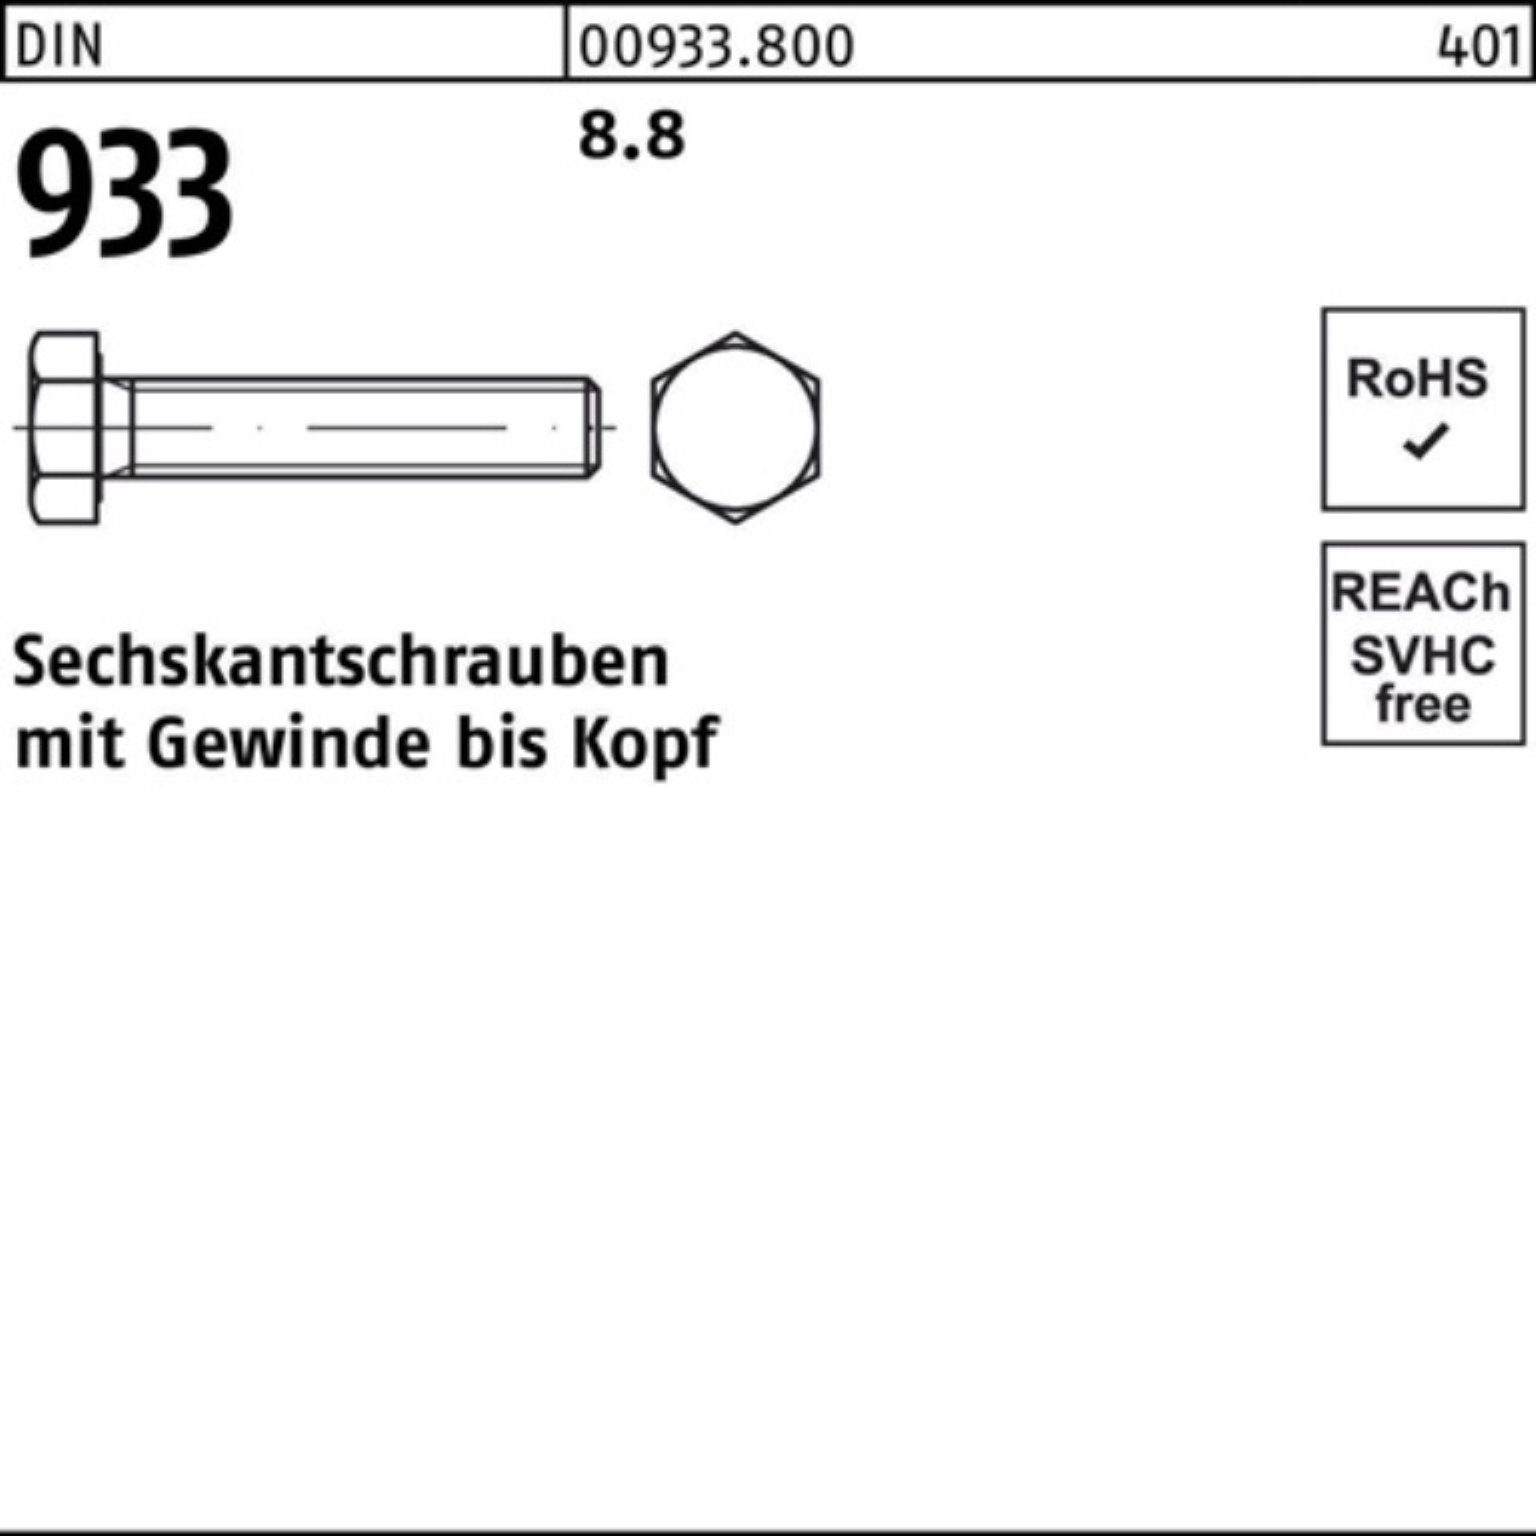 Sechskantschraube Pack 933 Reyher VG M24x 100er 933 DIN 260 Sechskantschraube Stück DIN 1 8.8